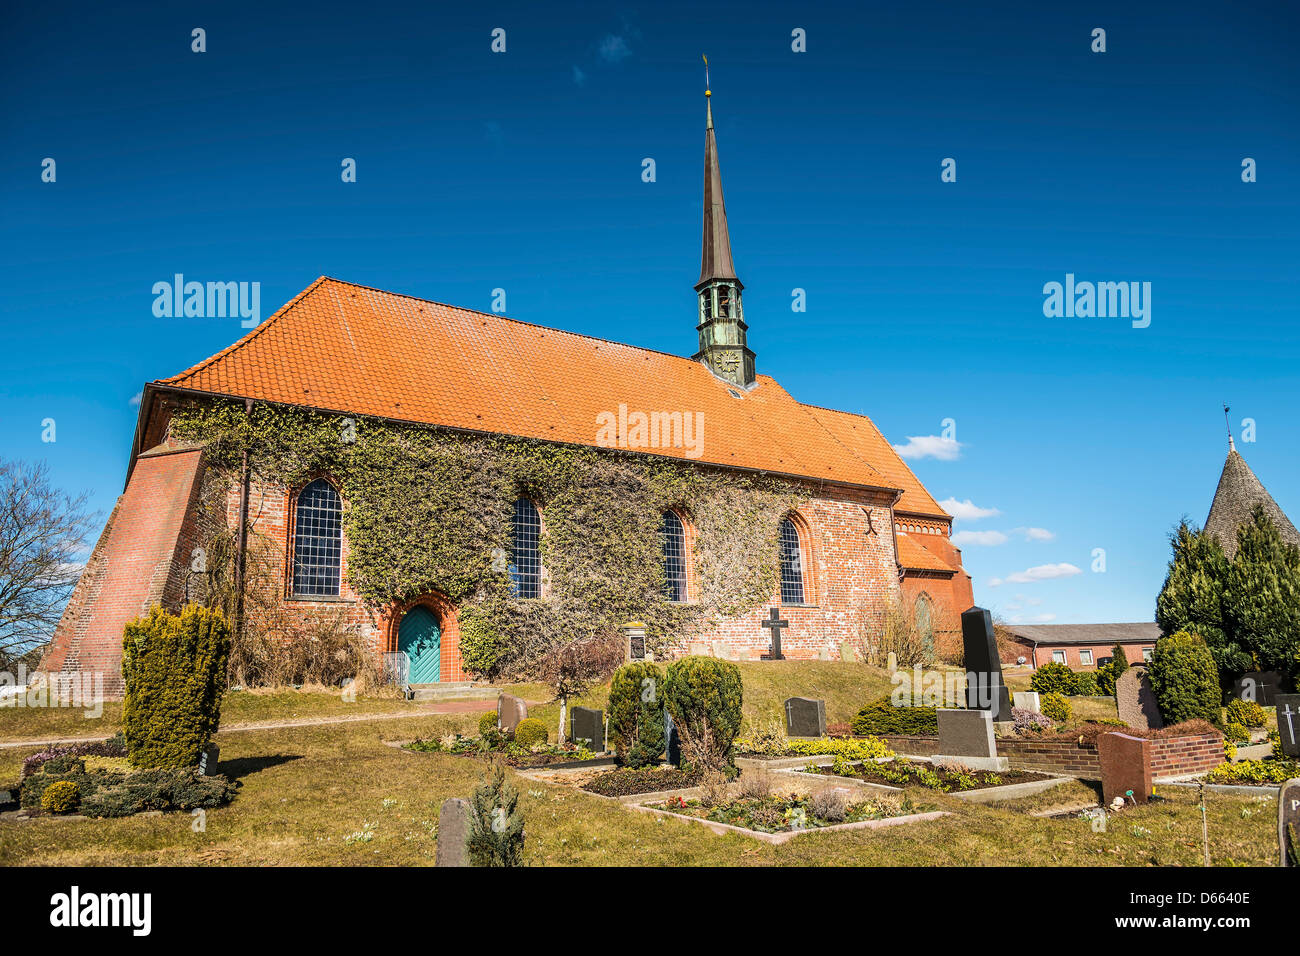 L'église en brique rouge aux beaux jours au printemps dans un petit village du nord de l'Allemagne Banque D'Images